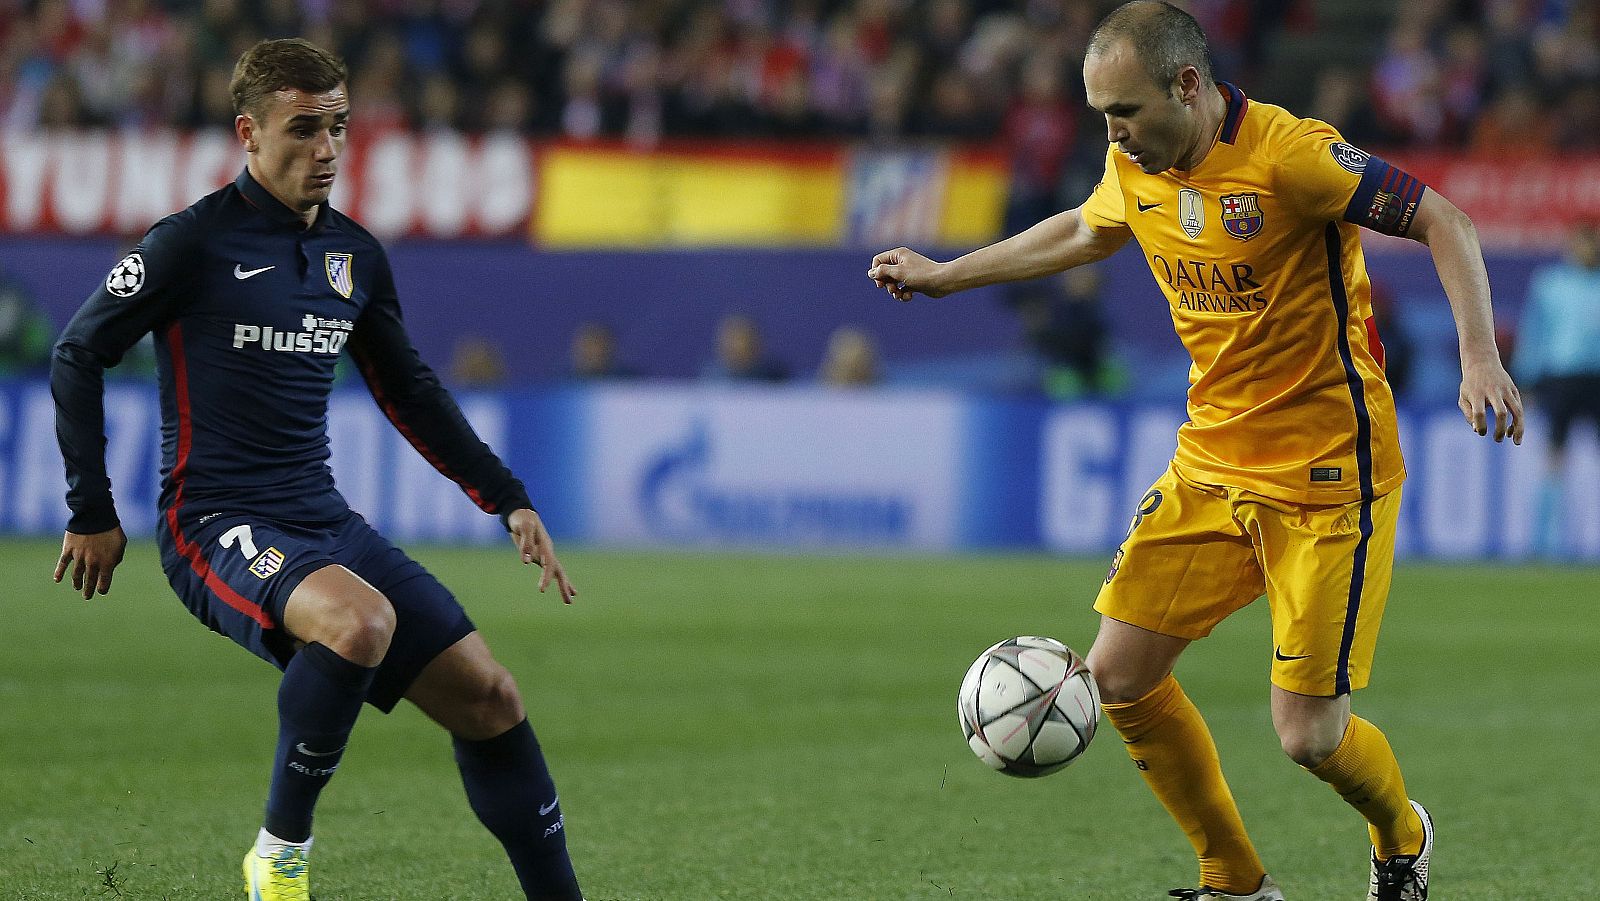 El centrocampista del FC Barcelona Andrés Iniesta con el balón ante el delantero francés del Atlético de Madrid, Antoine Griezmann.